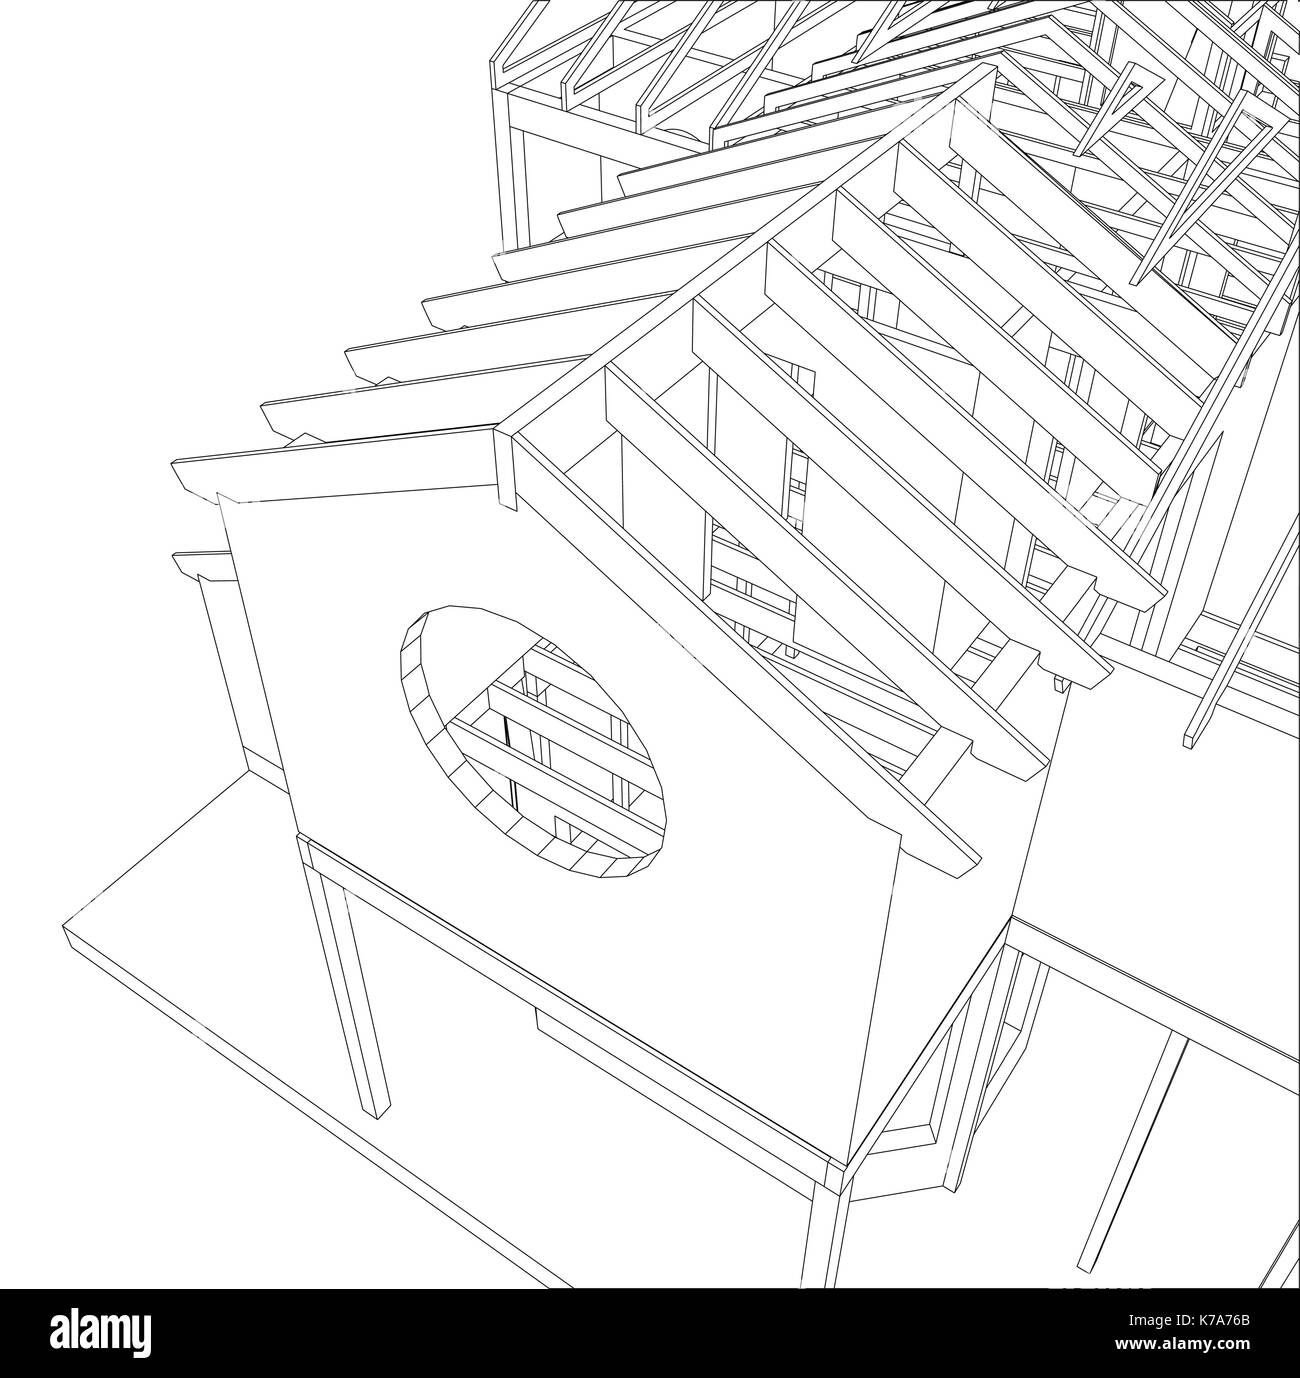 Croquis vecteur house sur le fond blanc. eps 10. vecteur créé de 3d. Illustration de Vecteur